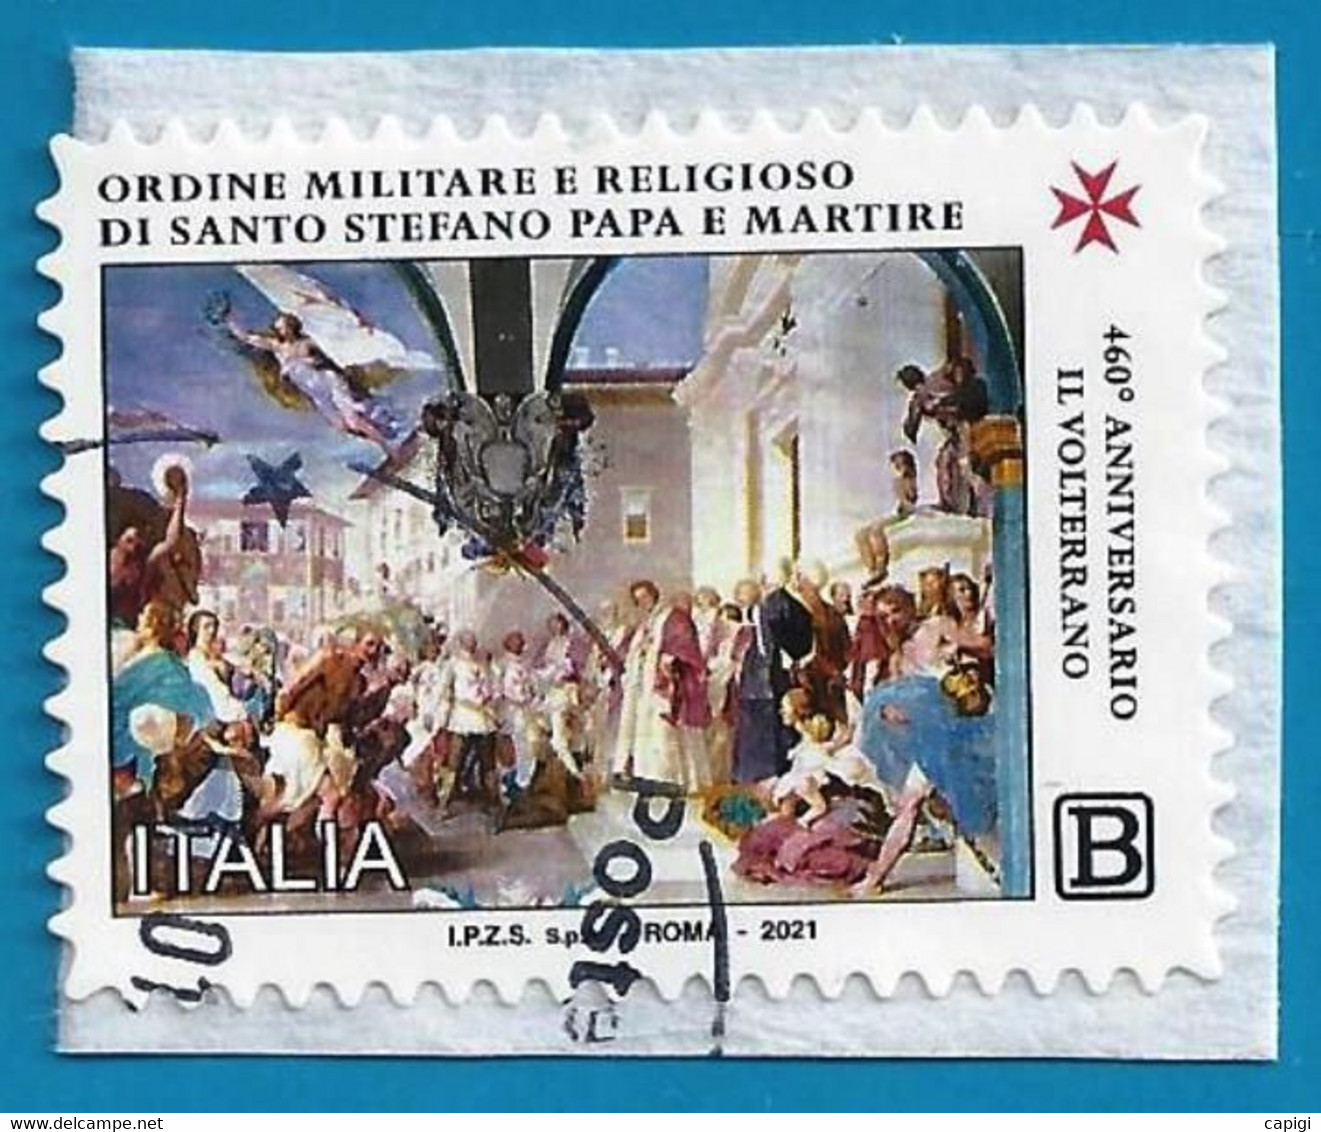 2021 - ITALIA - ORDINE MILITARE E RELIGIOSO DI SANTO STEFANO PAPA E MARTIRE - USATO SU FRAMMENTO #2 - 2021-...: Used